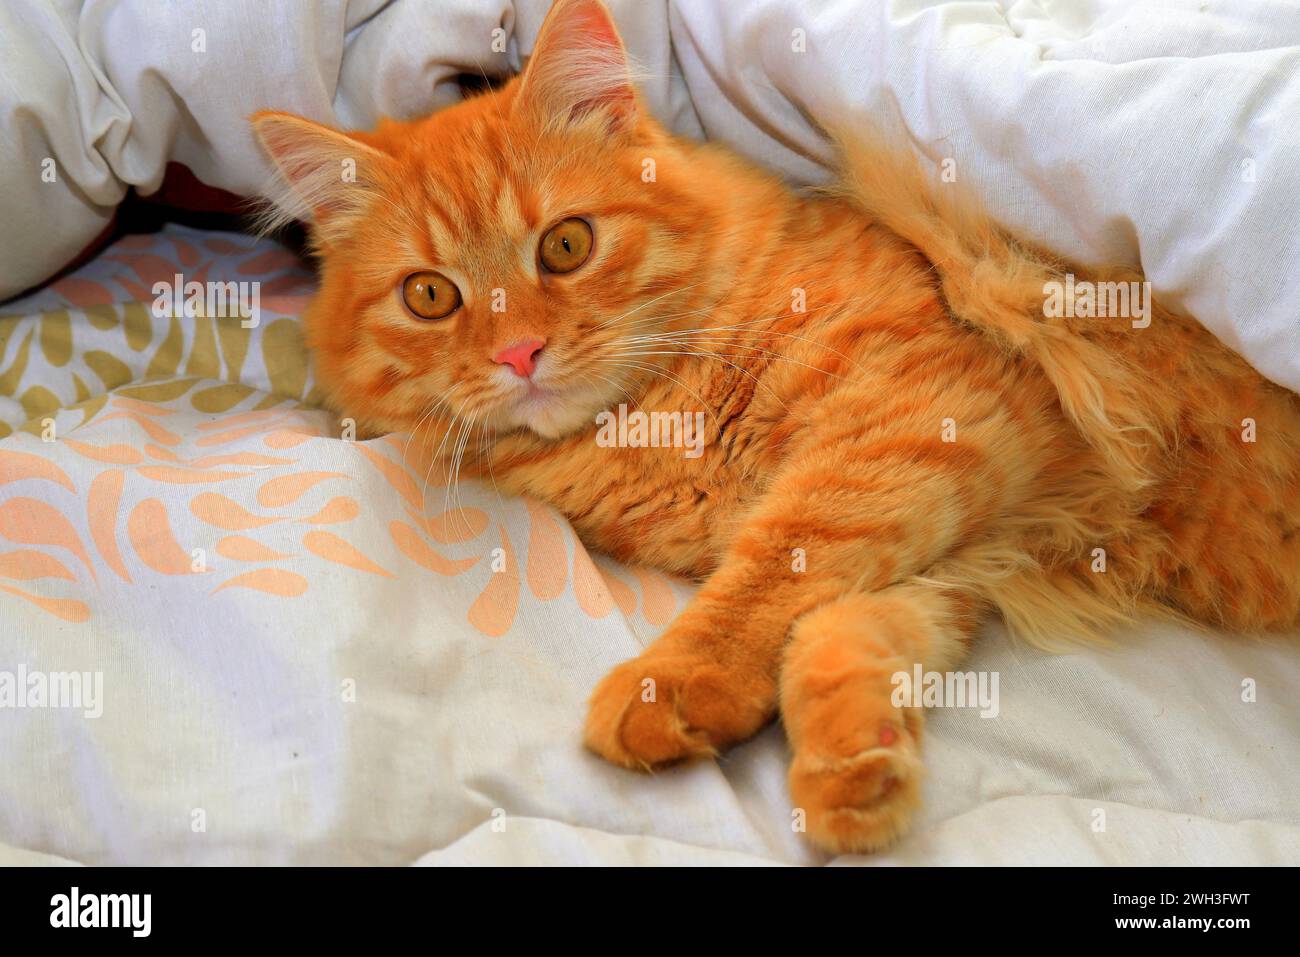 Un chat au gingembre effrayé repose sur une couverture colorée, les yeux grands ouverts. Gros plan sur un chat pelucheux rouge à poils longs. Banque D'Images